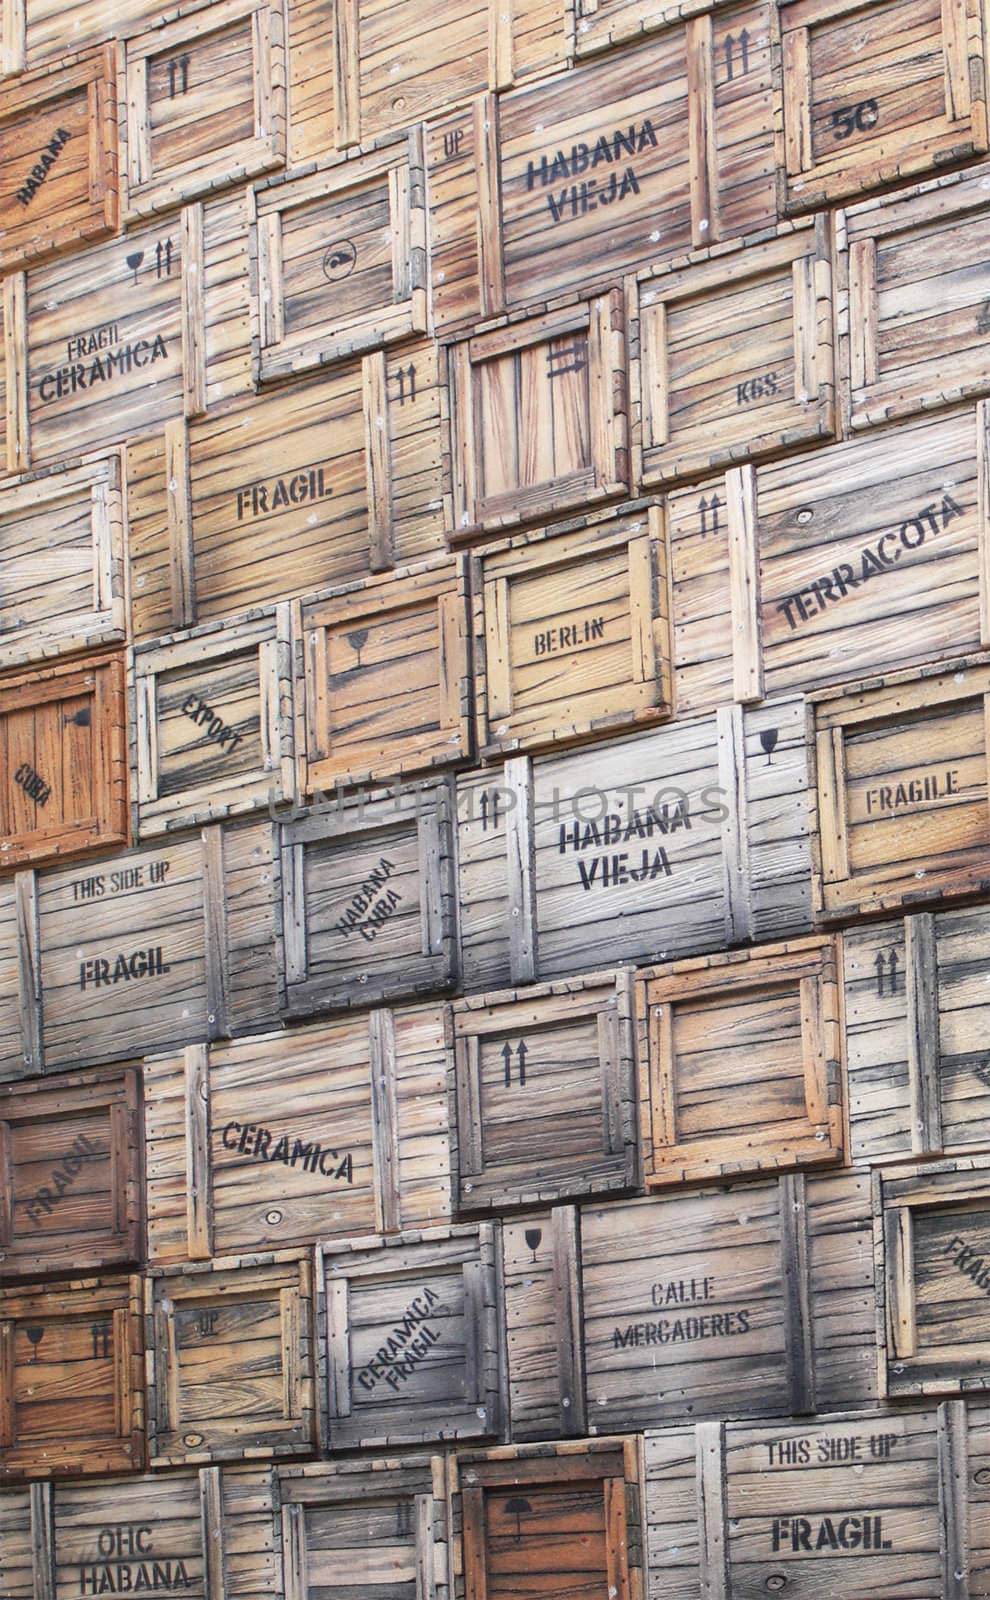 Wooden boxes with merchandise in Havana, Cuba. Import, Export.